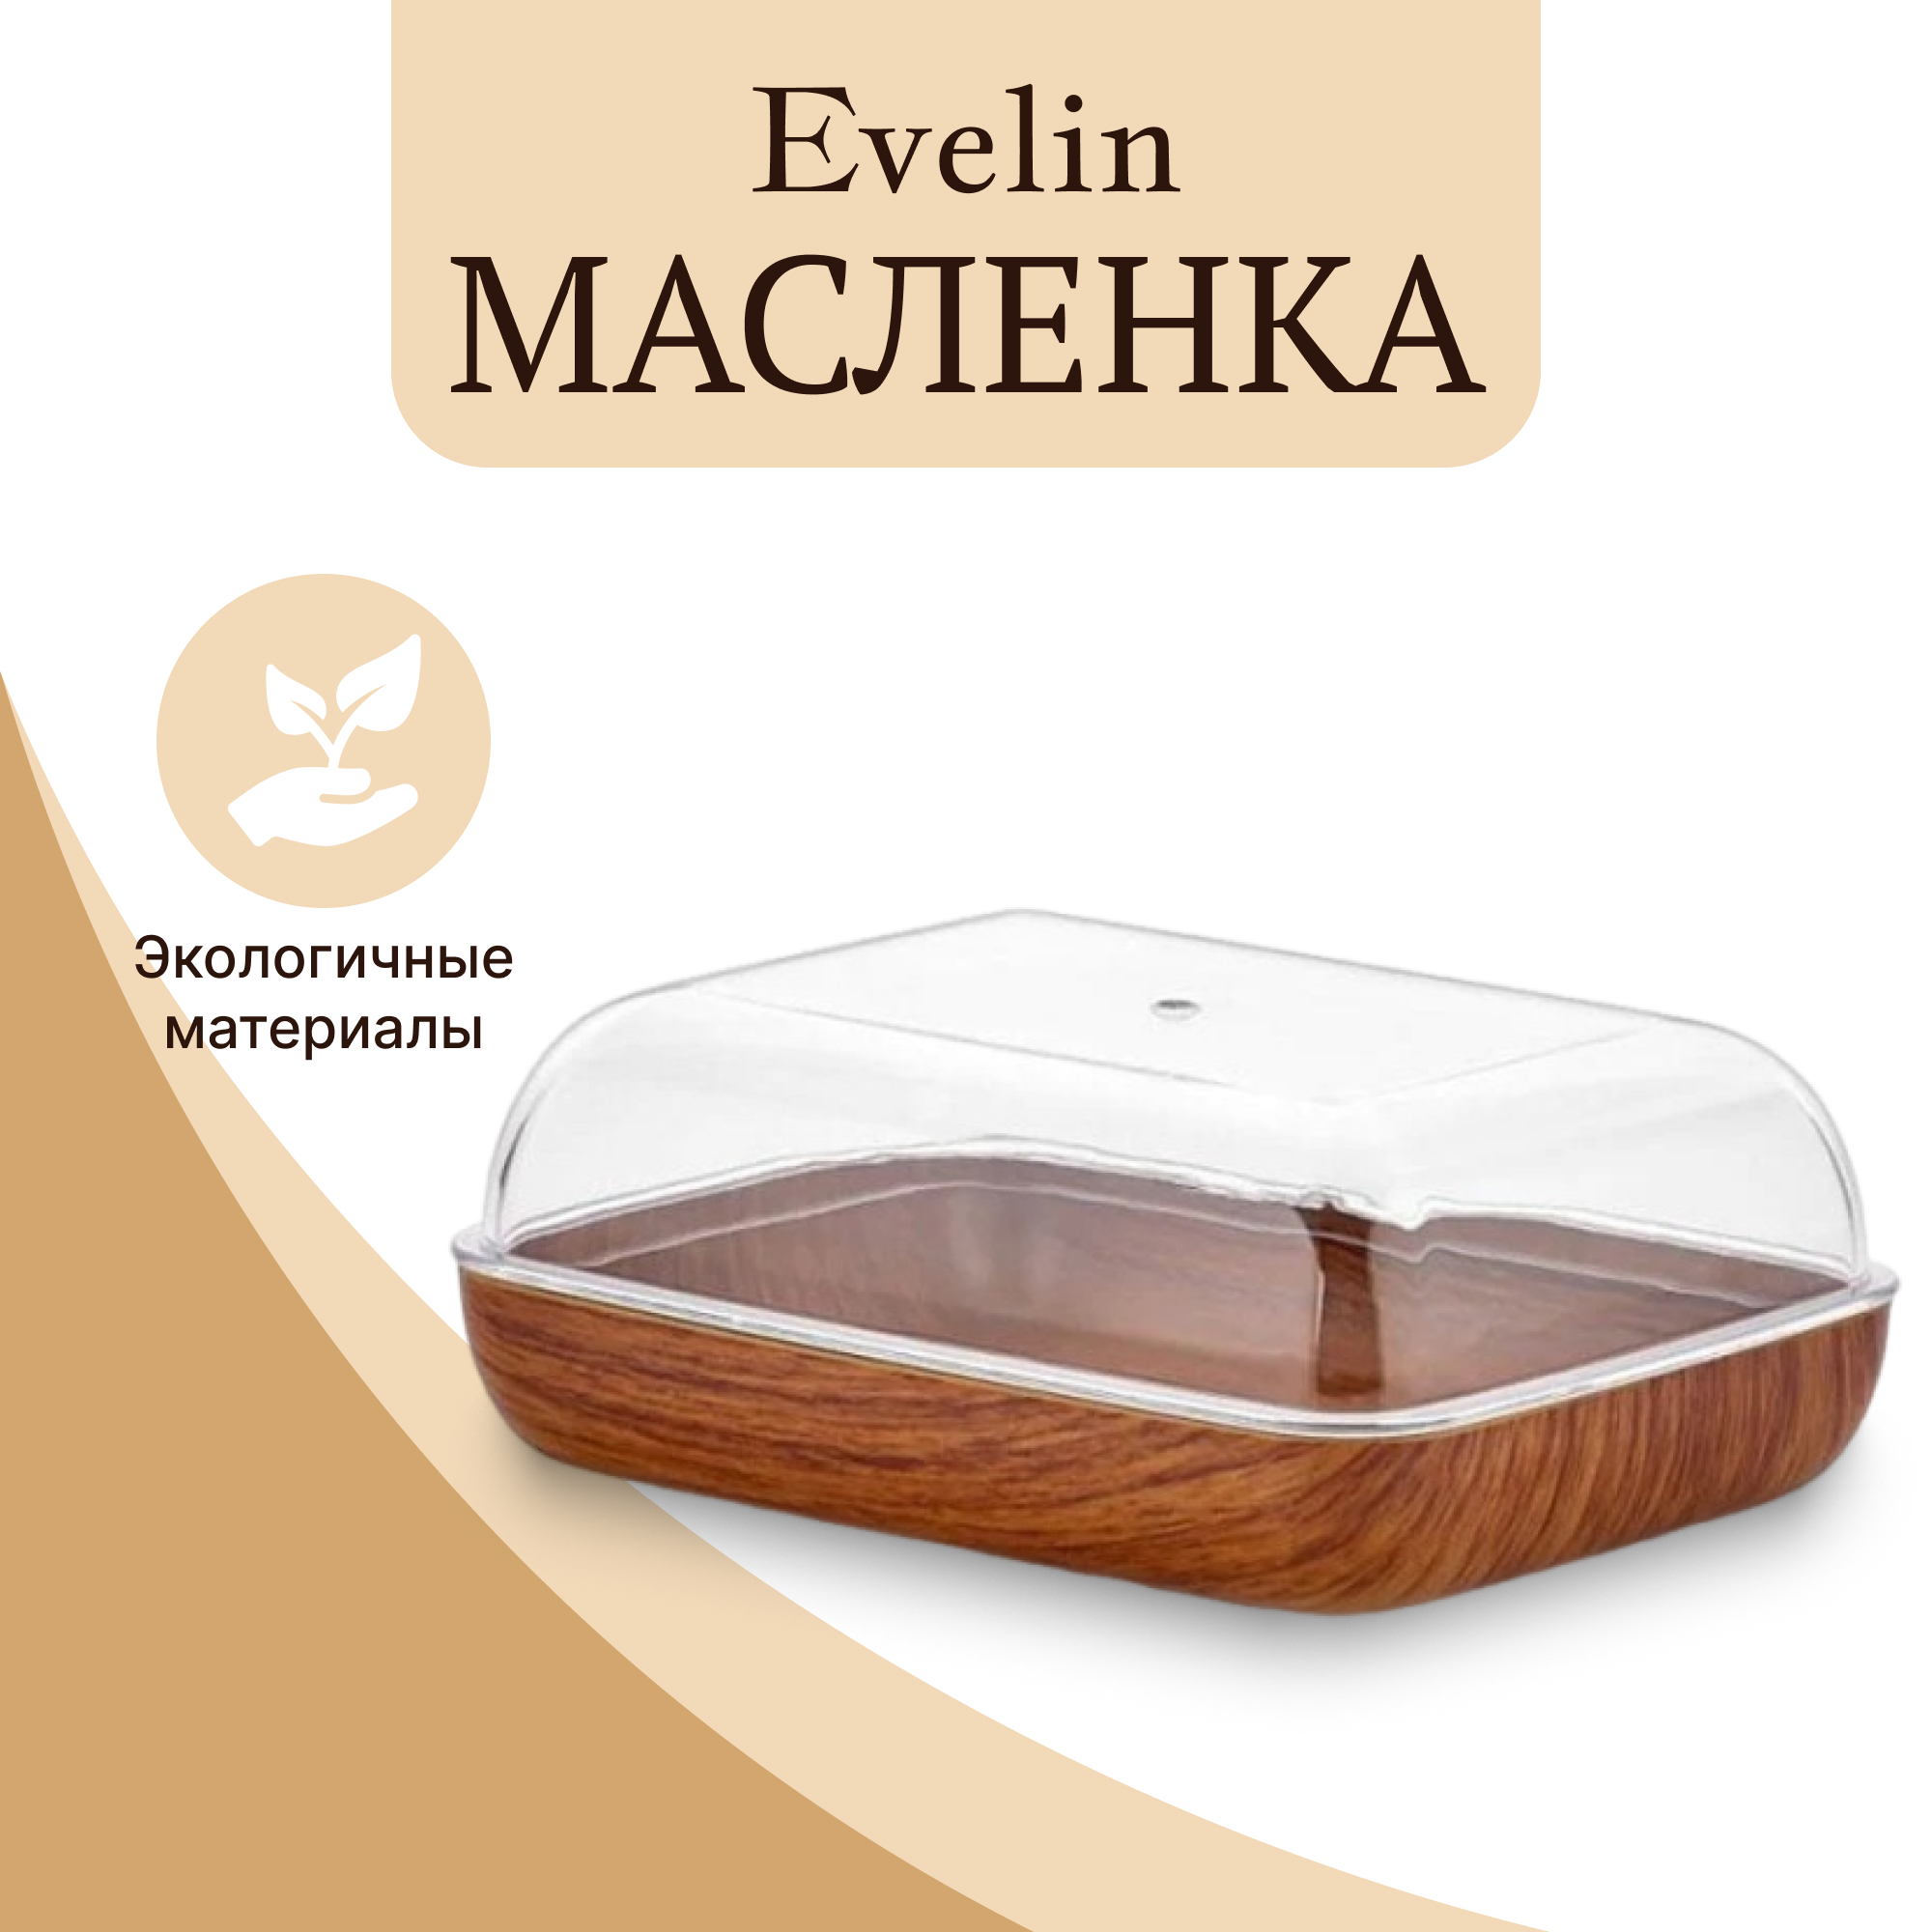 Масленка Evelin с крышкой 14 см, цвет коричневый - фото 2